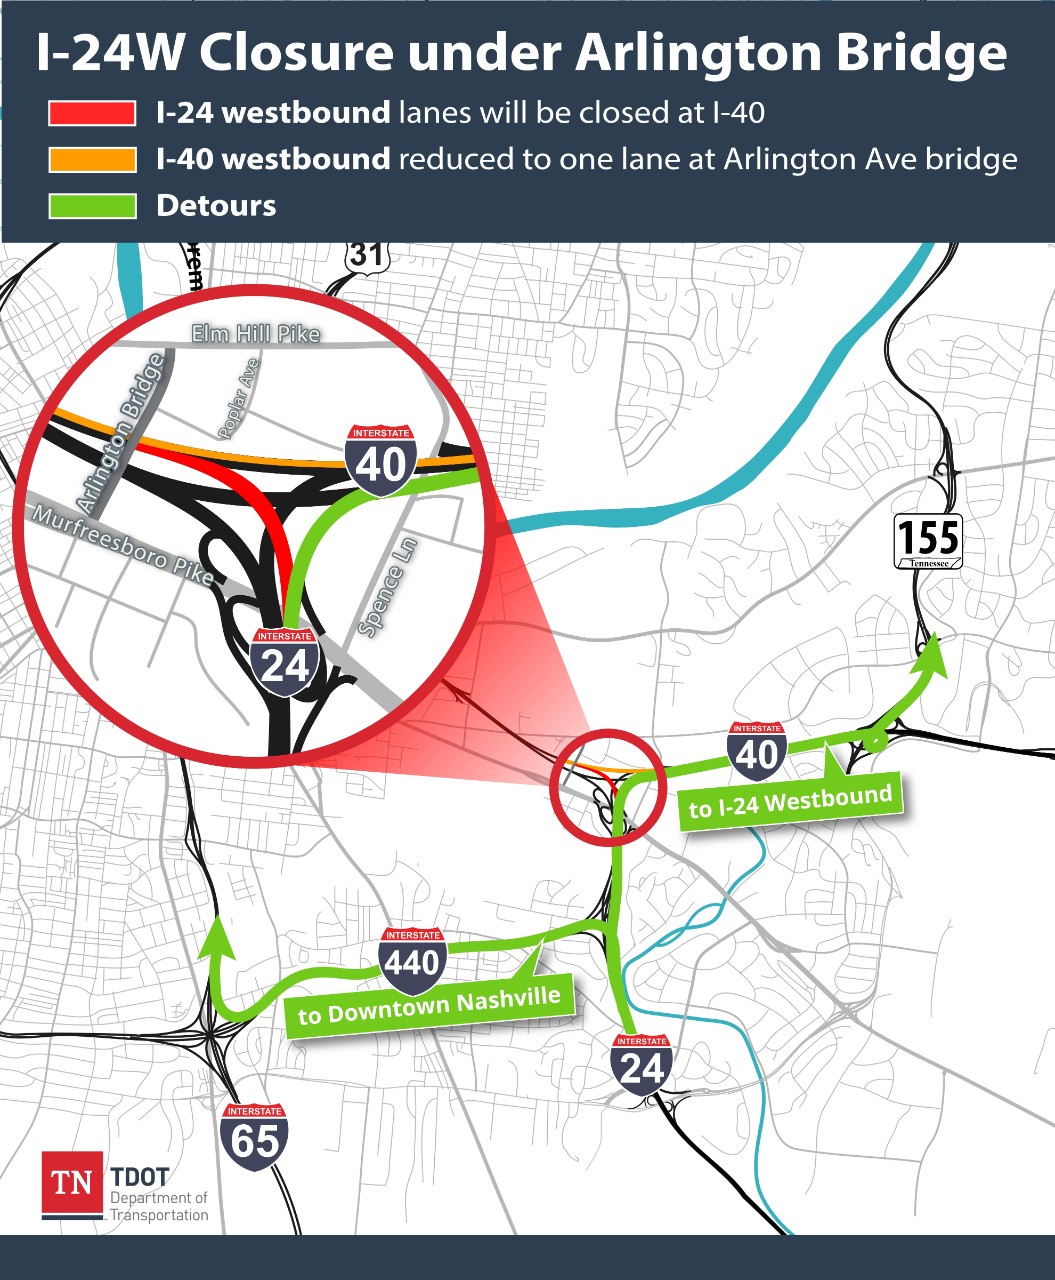 I-24 Arlington Bridge Closure